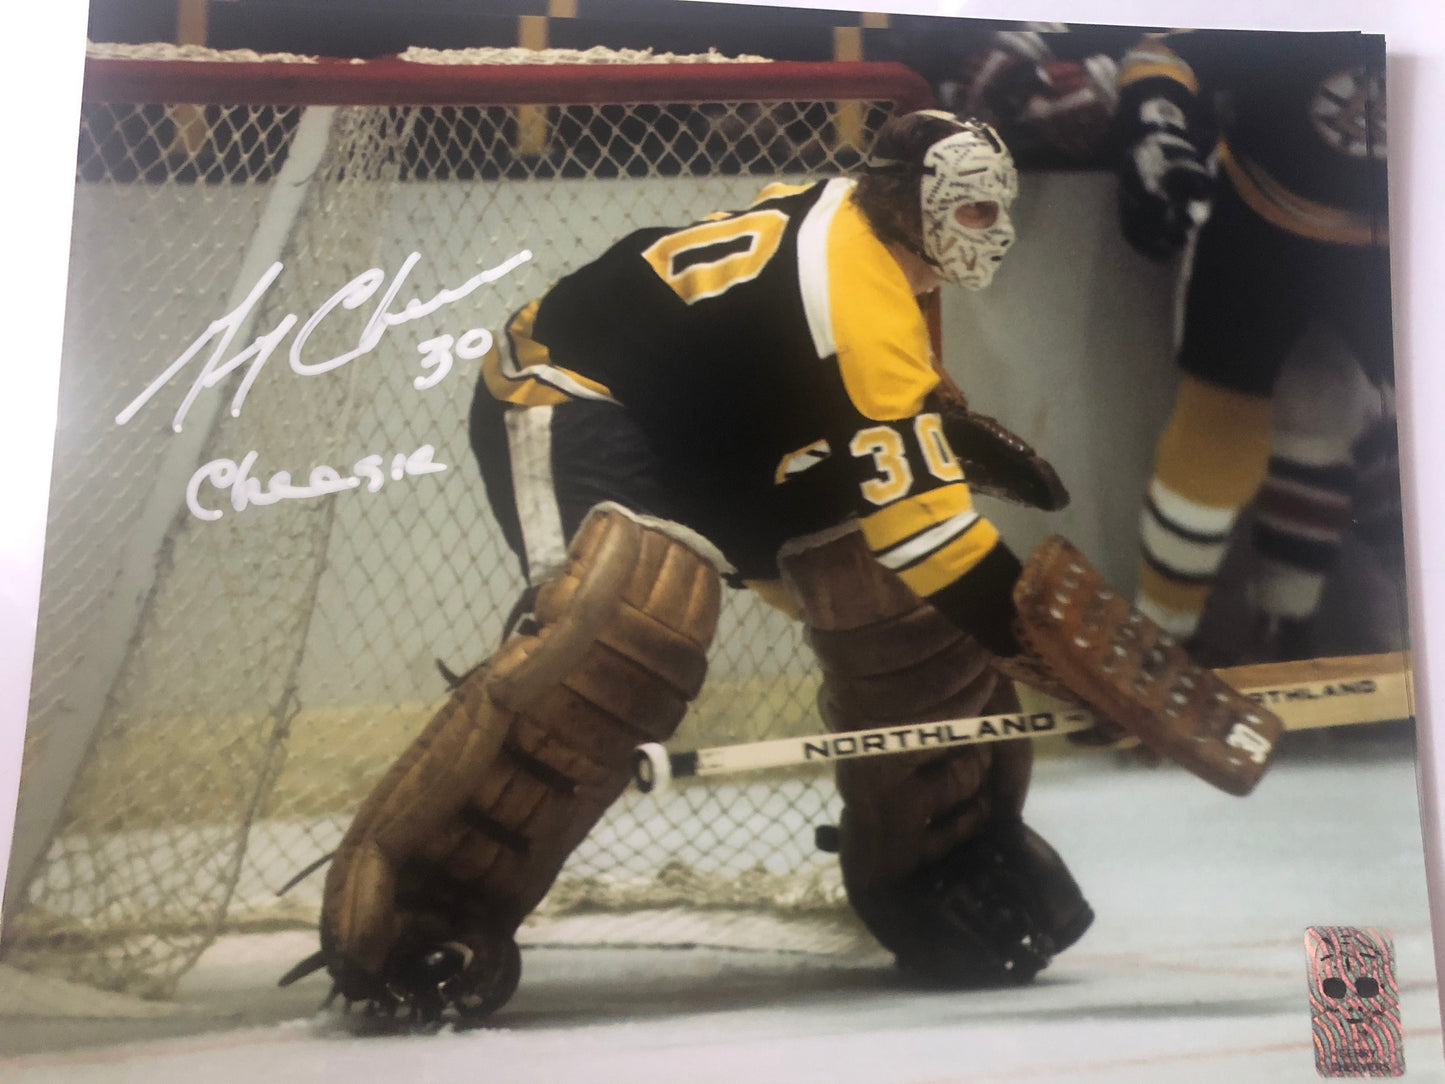 Bruins HOF Gerry Cheevers signed 8x10